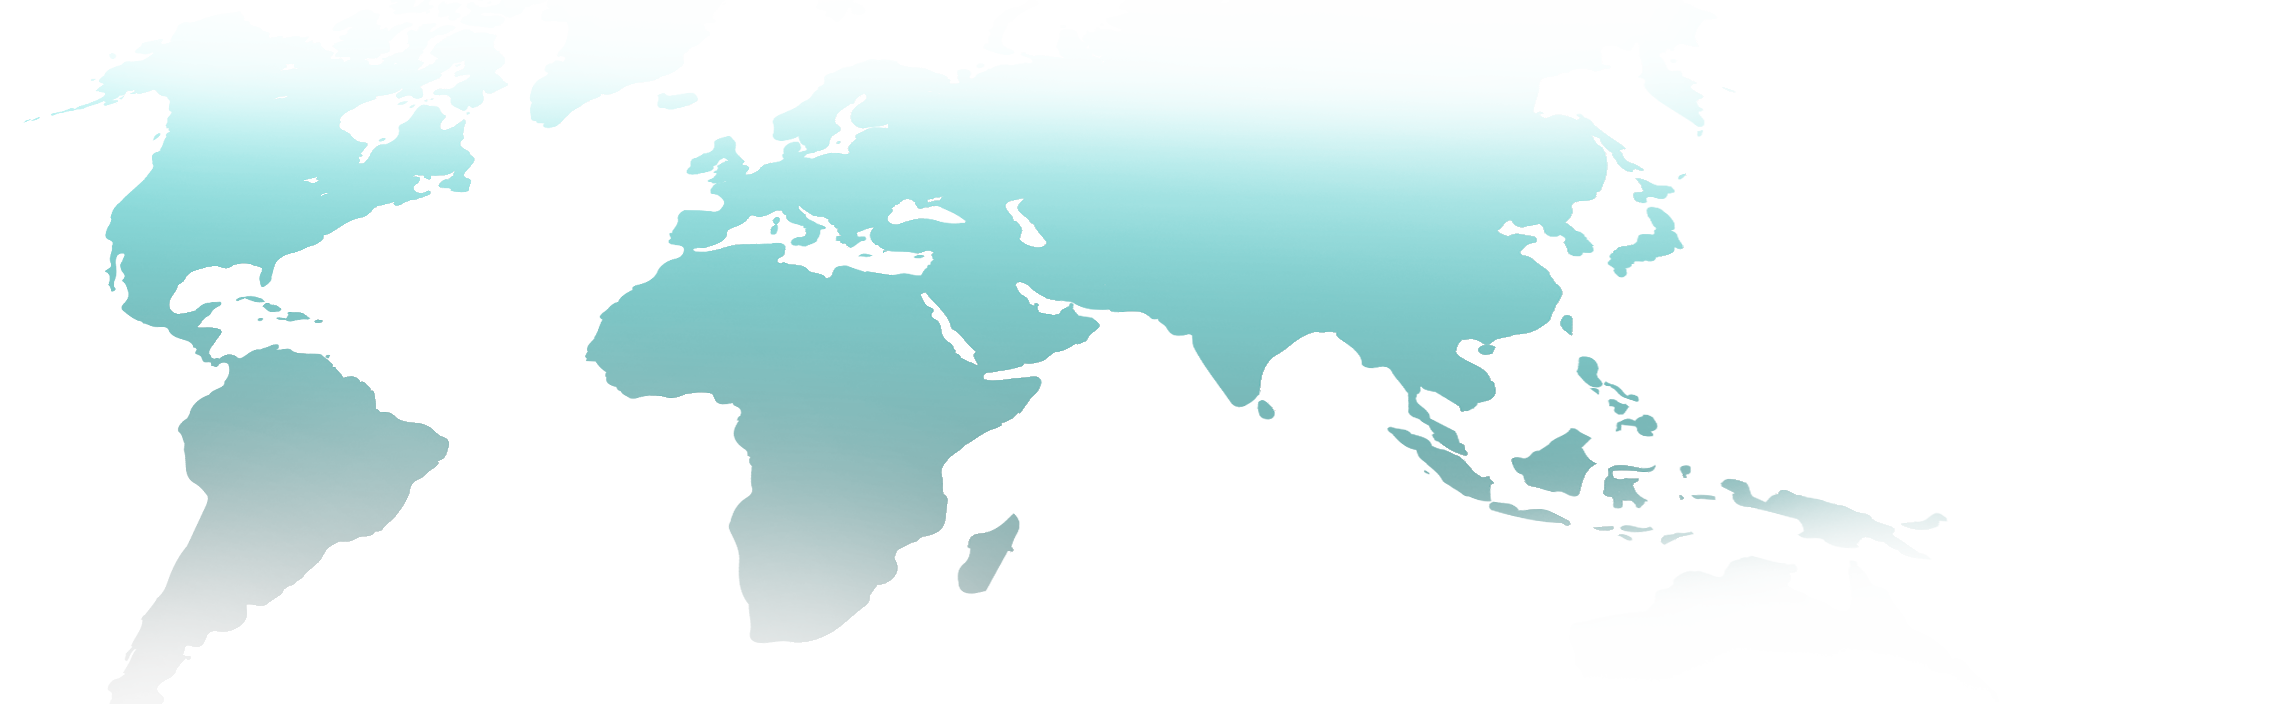 グローバル拠点の地図